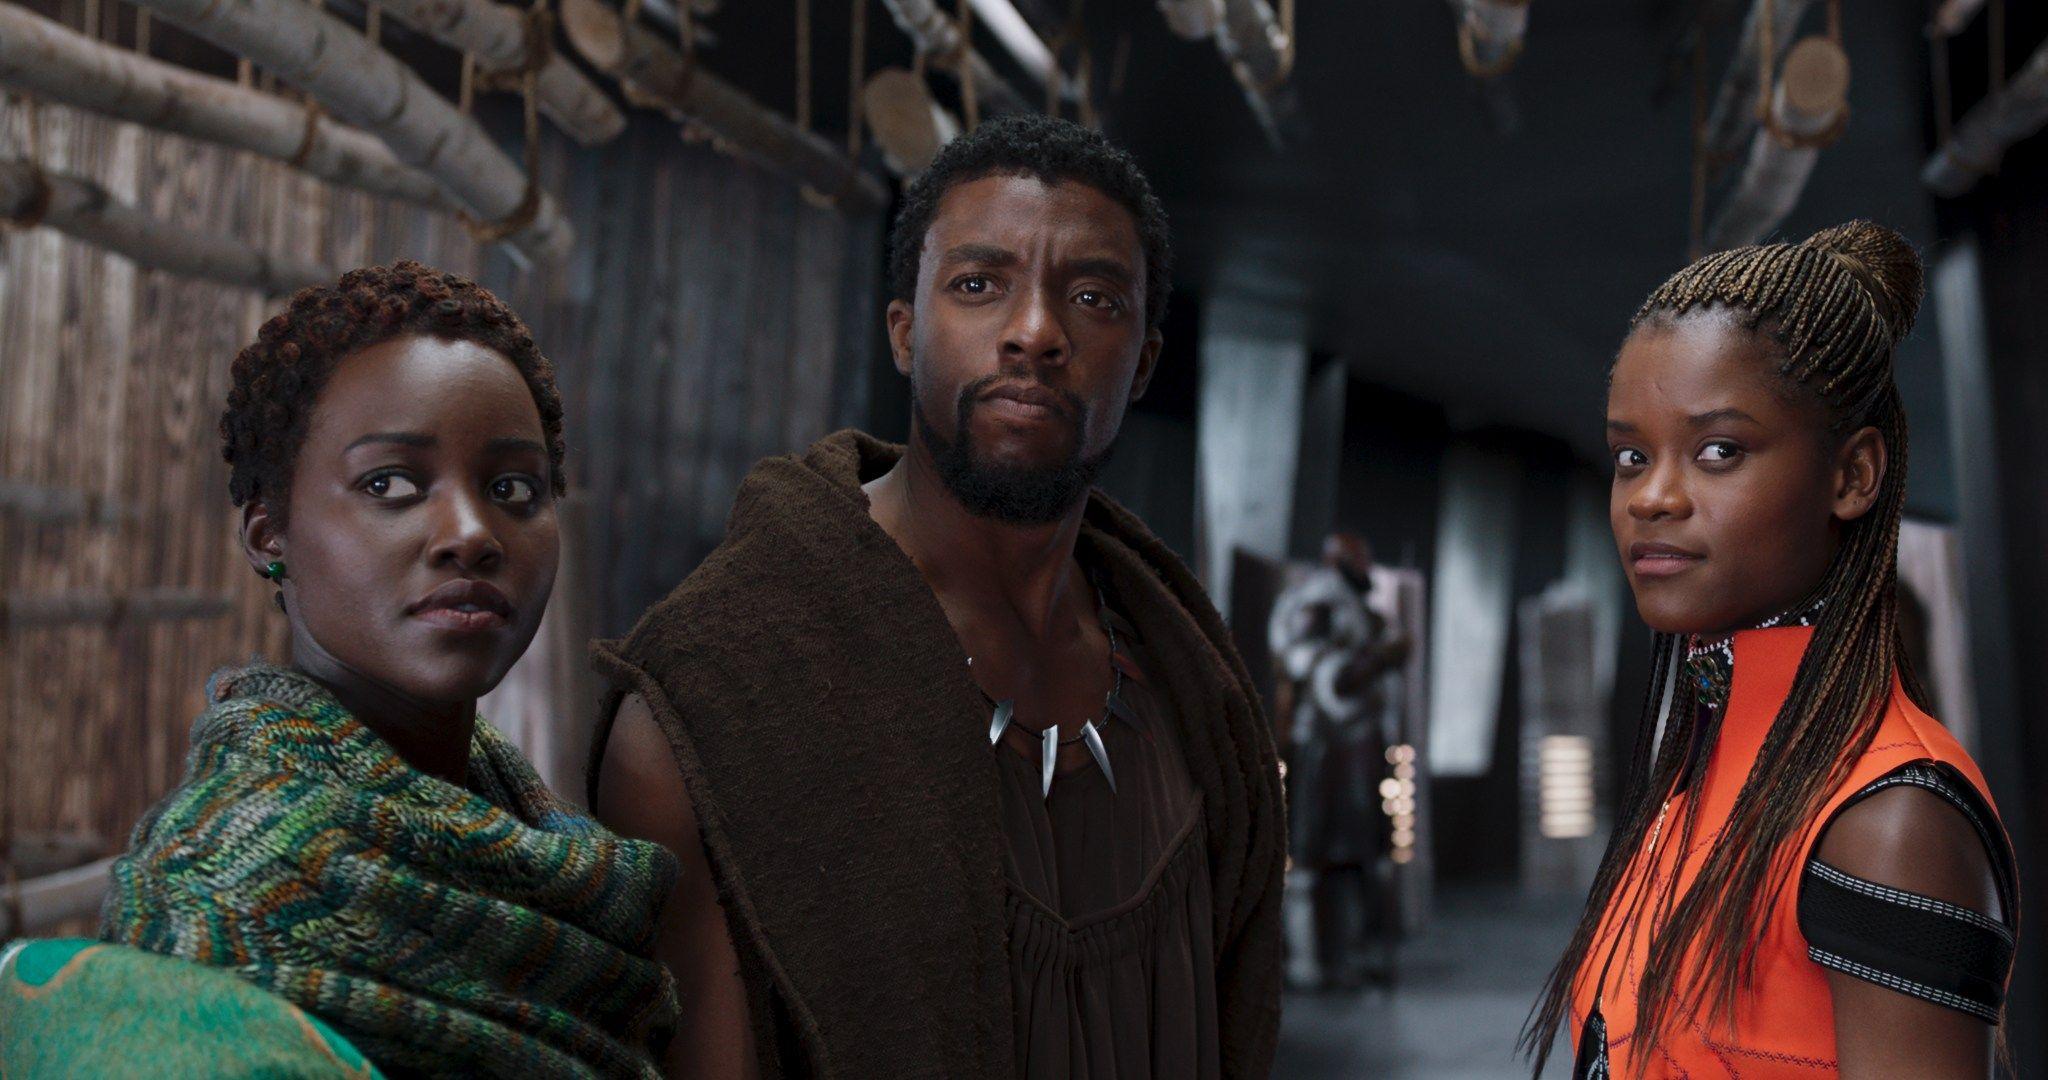 Brand new 'Black Panther' image features Chadwick Boseman, Lupita